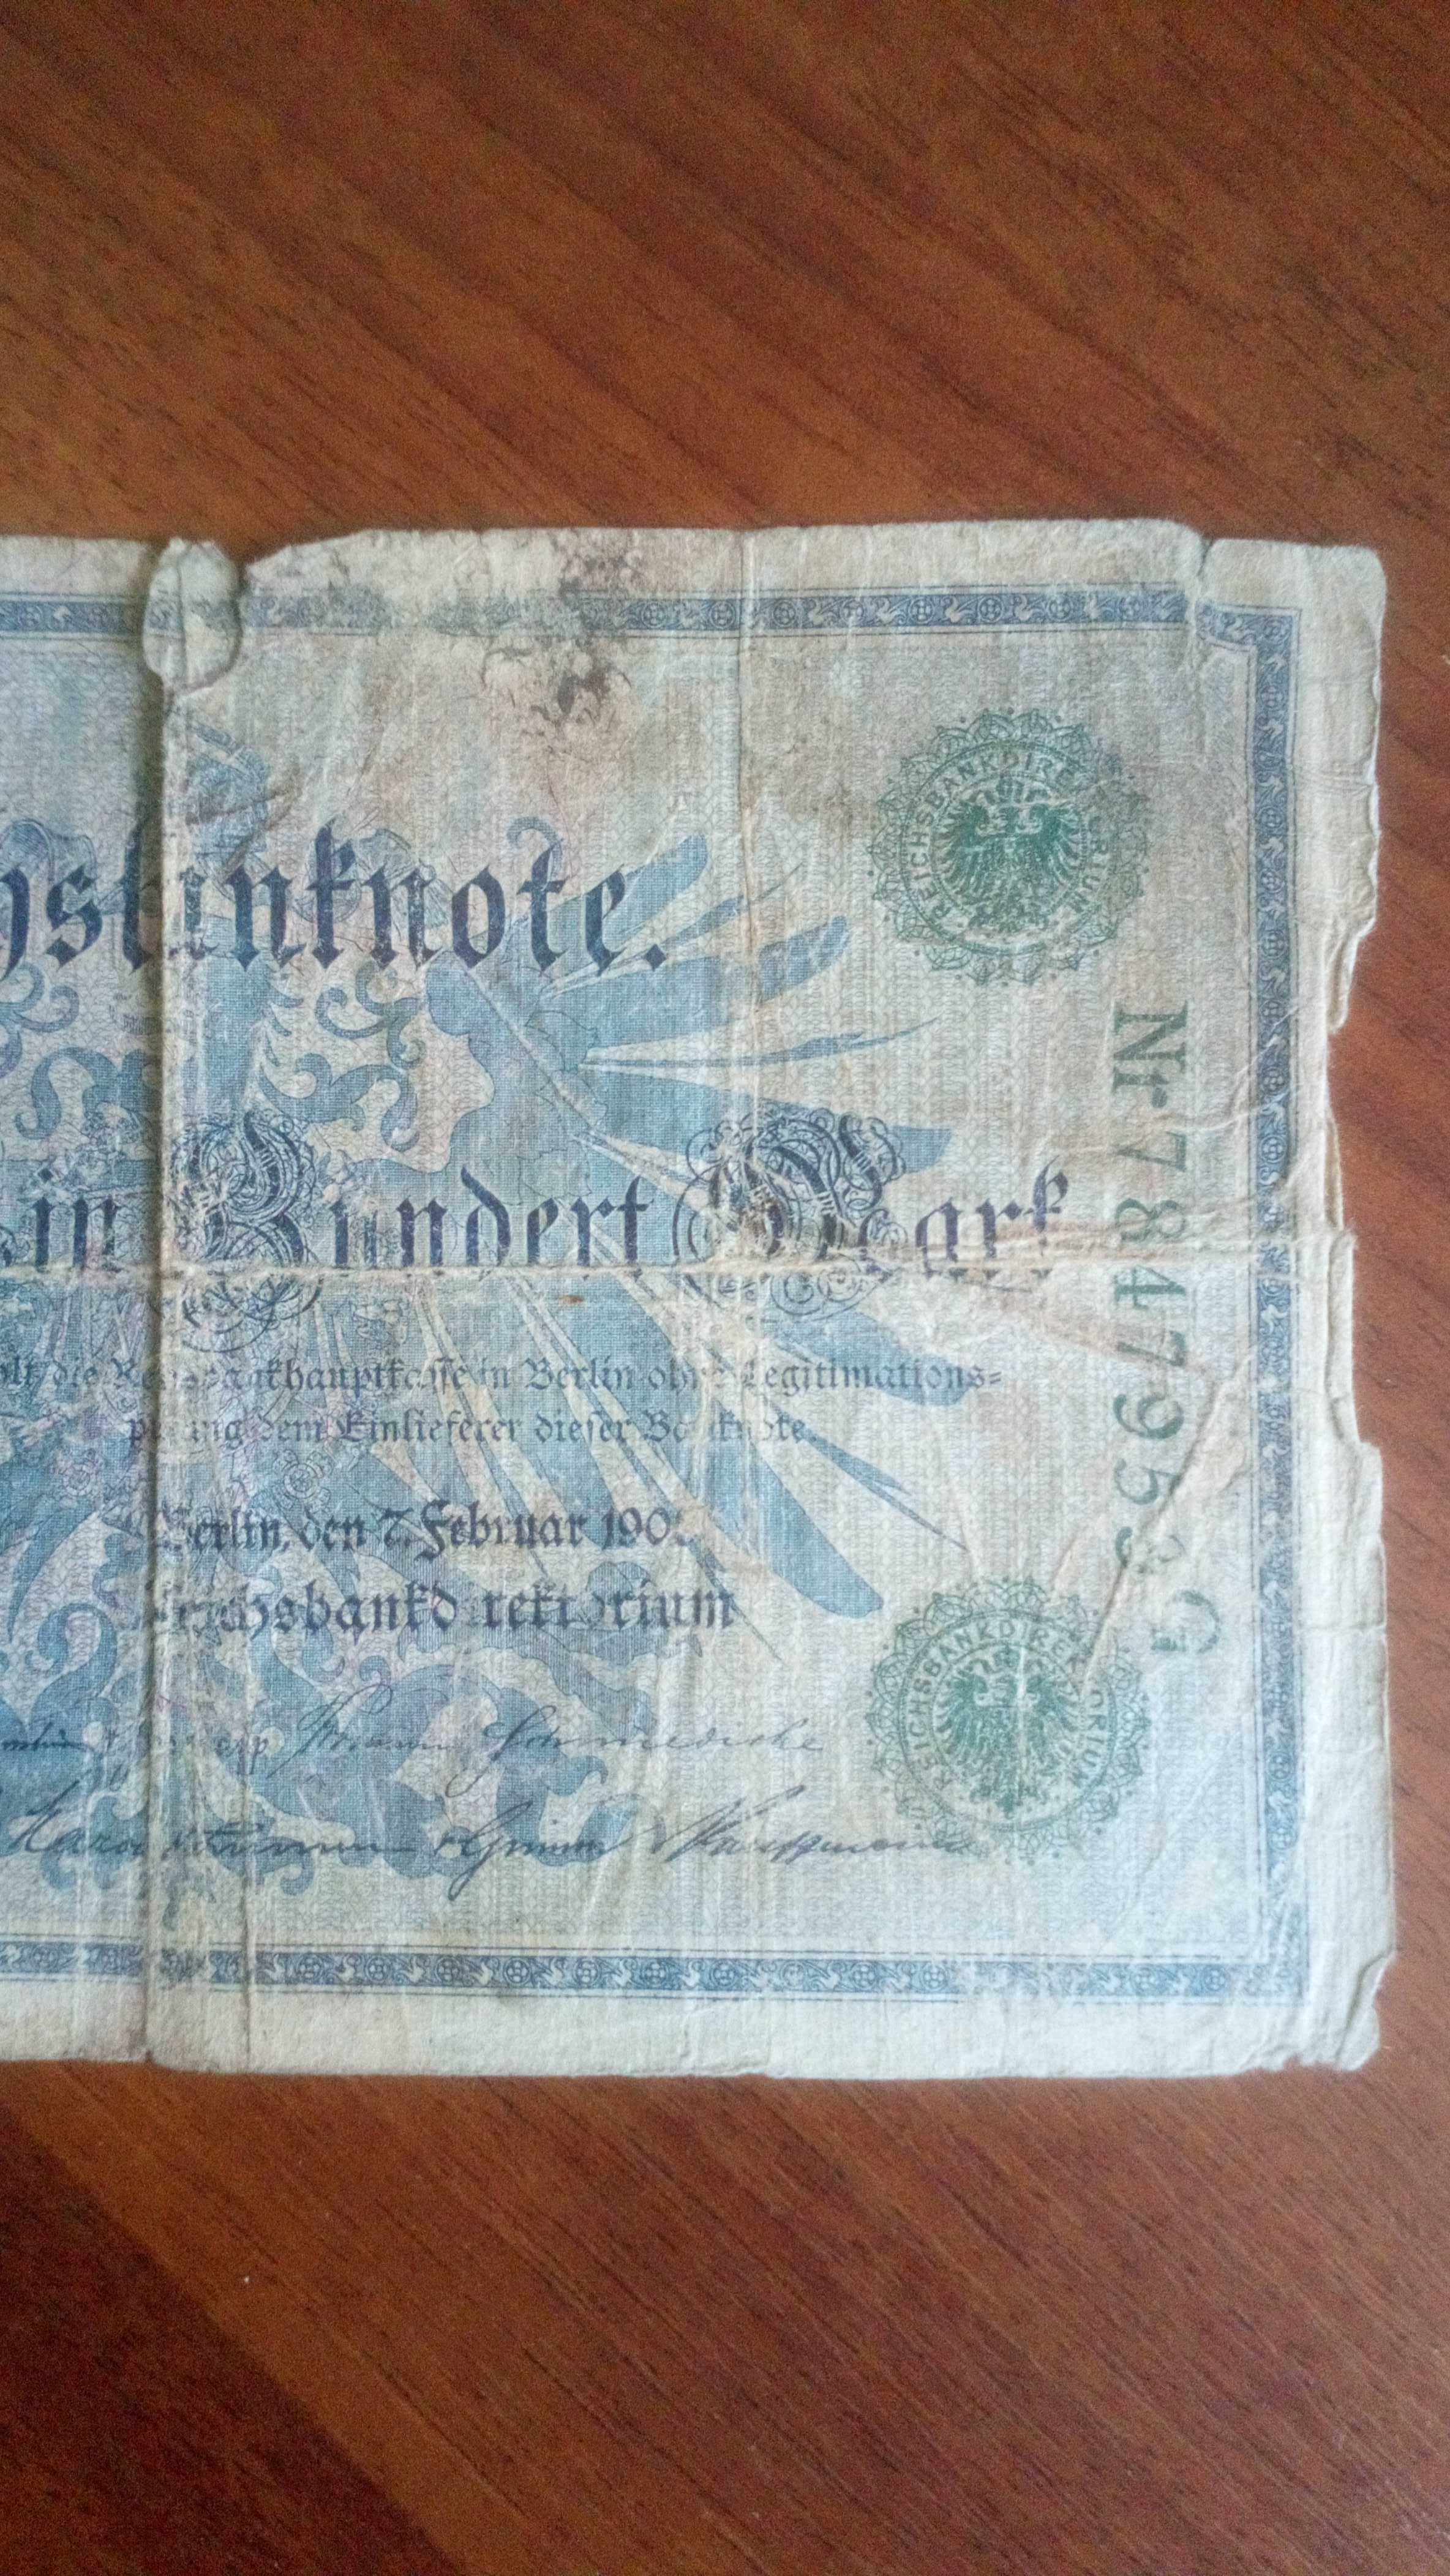 Banknot 100 marek zielona pieczęć około 1900 r.